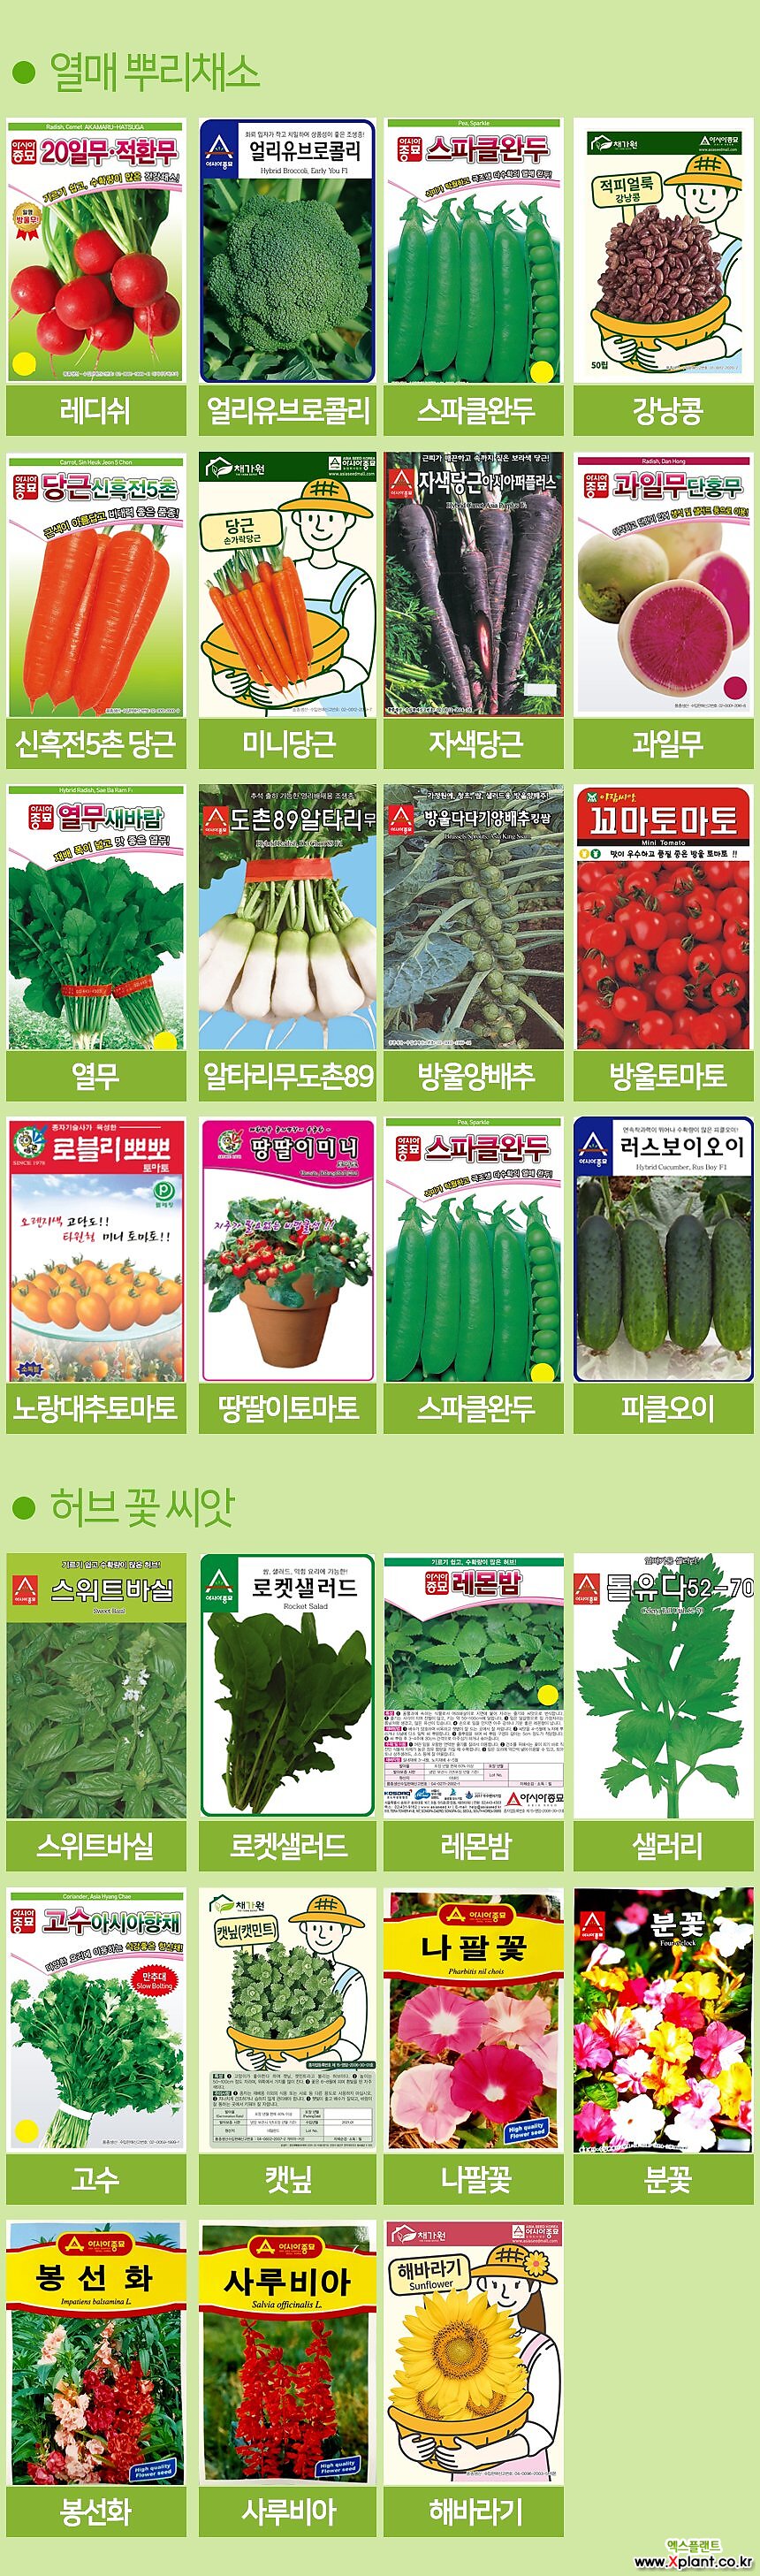 세경팜 아삭이상추생채 씨앗 베란다텃밭 식물키우기